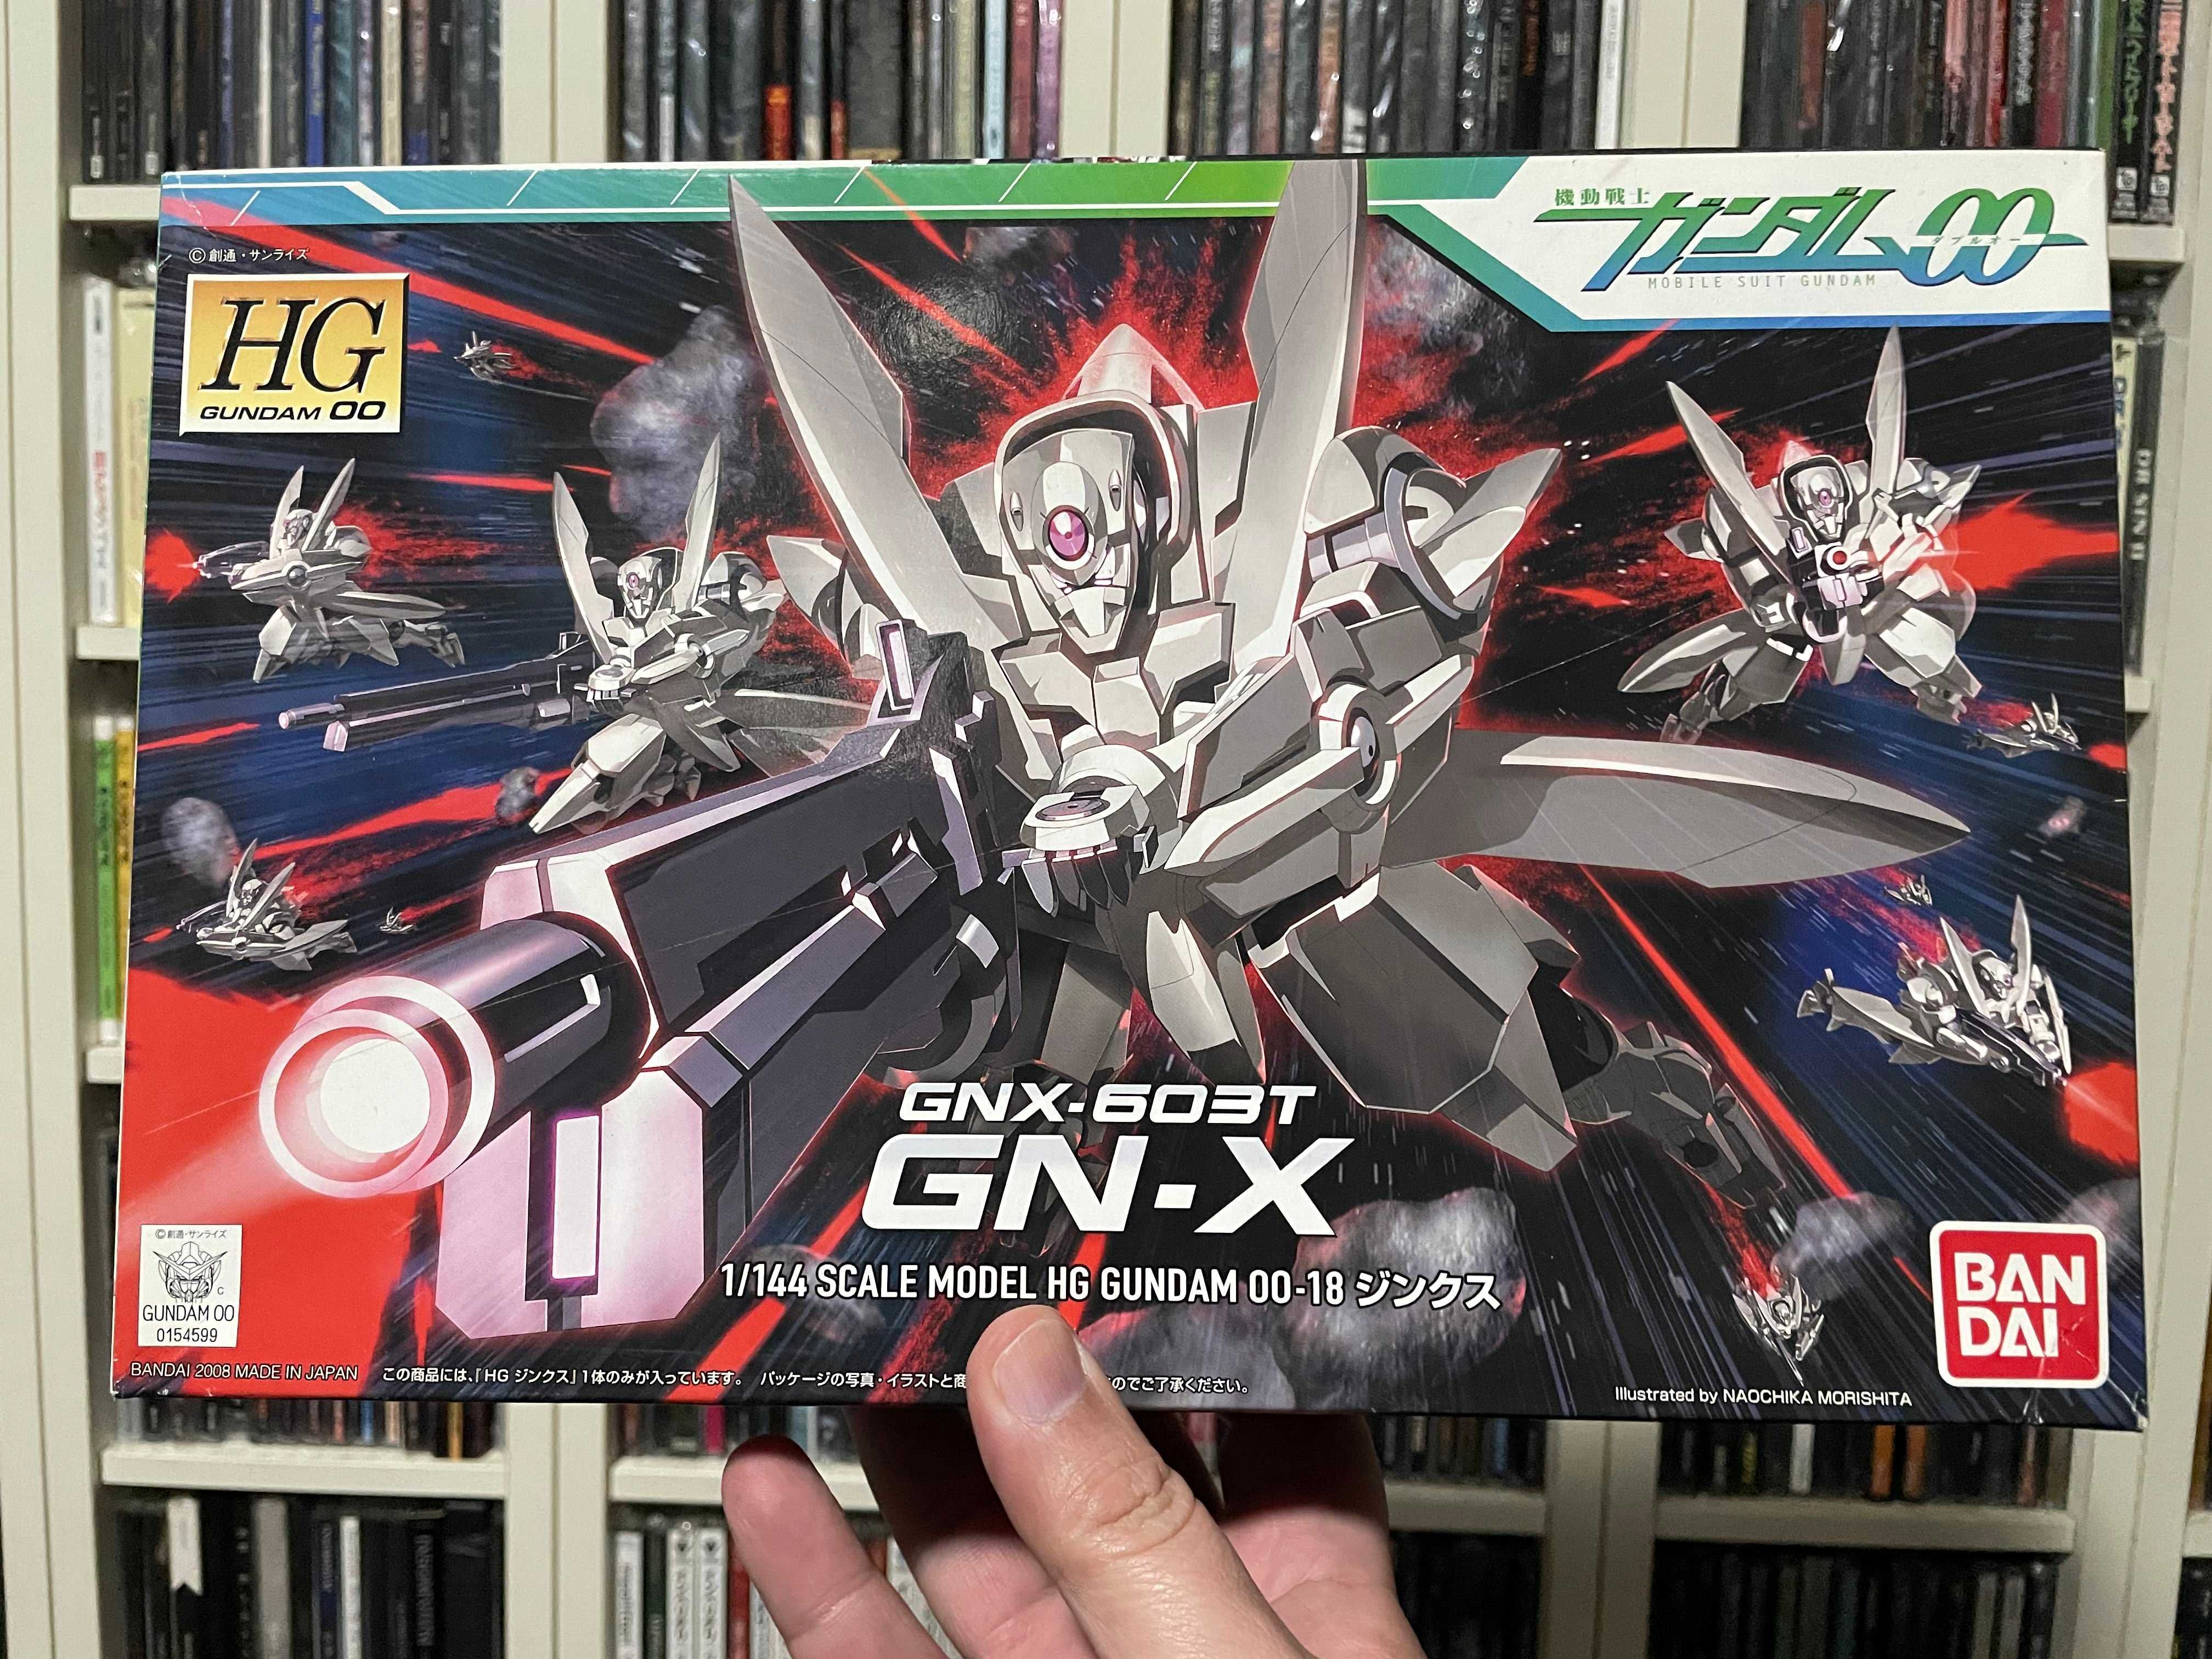 HG GNX 603T Gundam Bandai Model kit